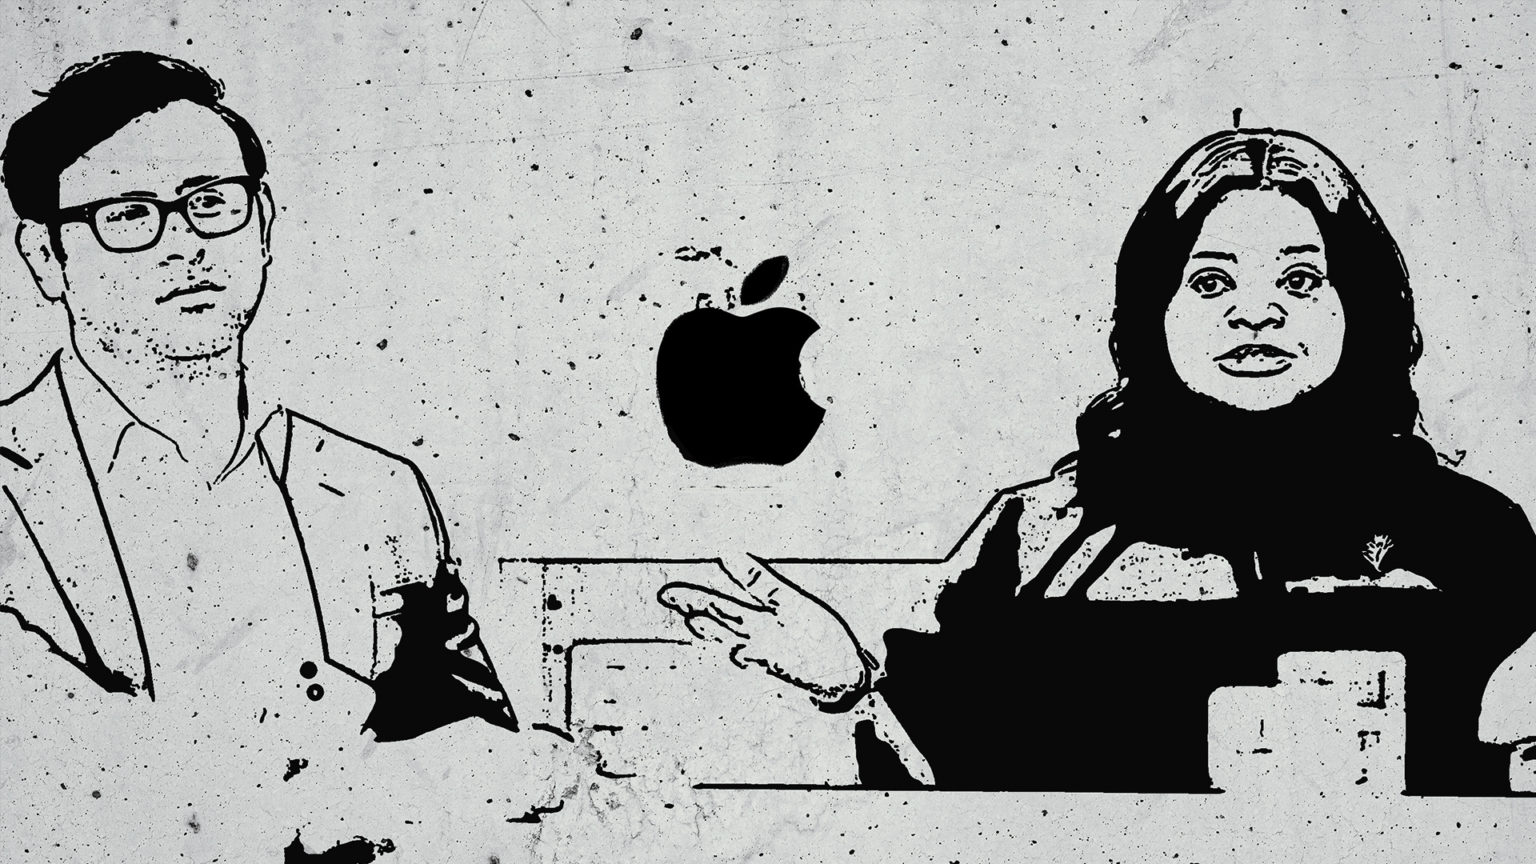 Marta, ¿tú qué opinas del anuncio de Apple?